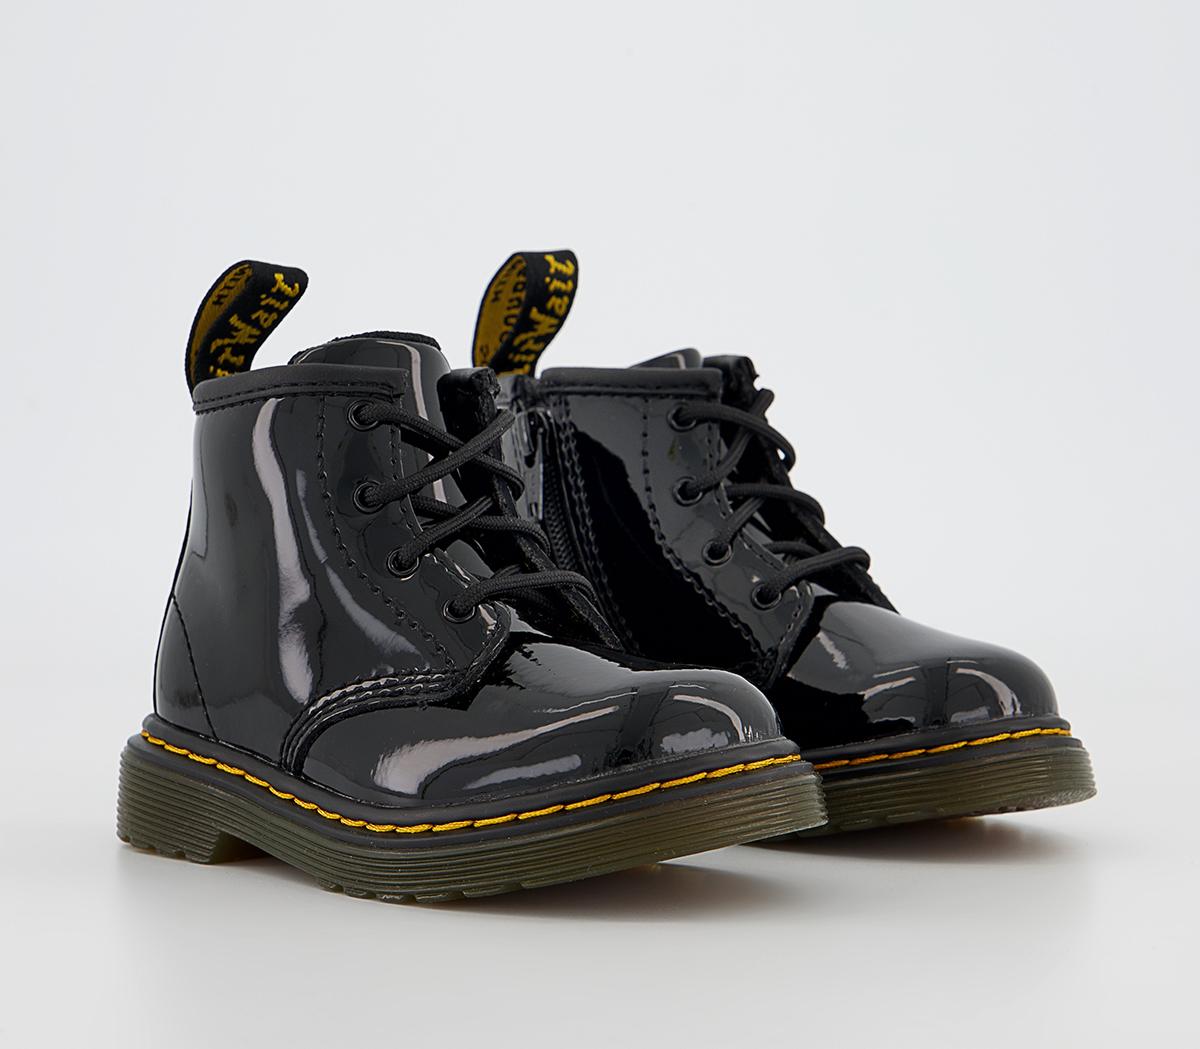 Dr. Martens 1460 Boots Black Patent, 5 Infant